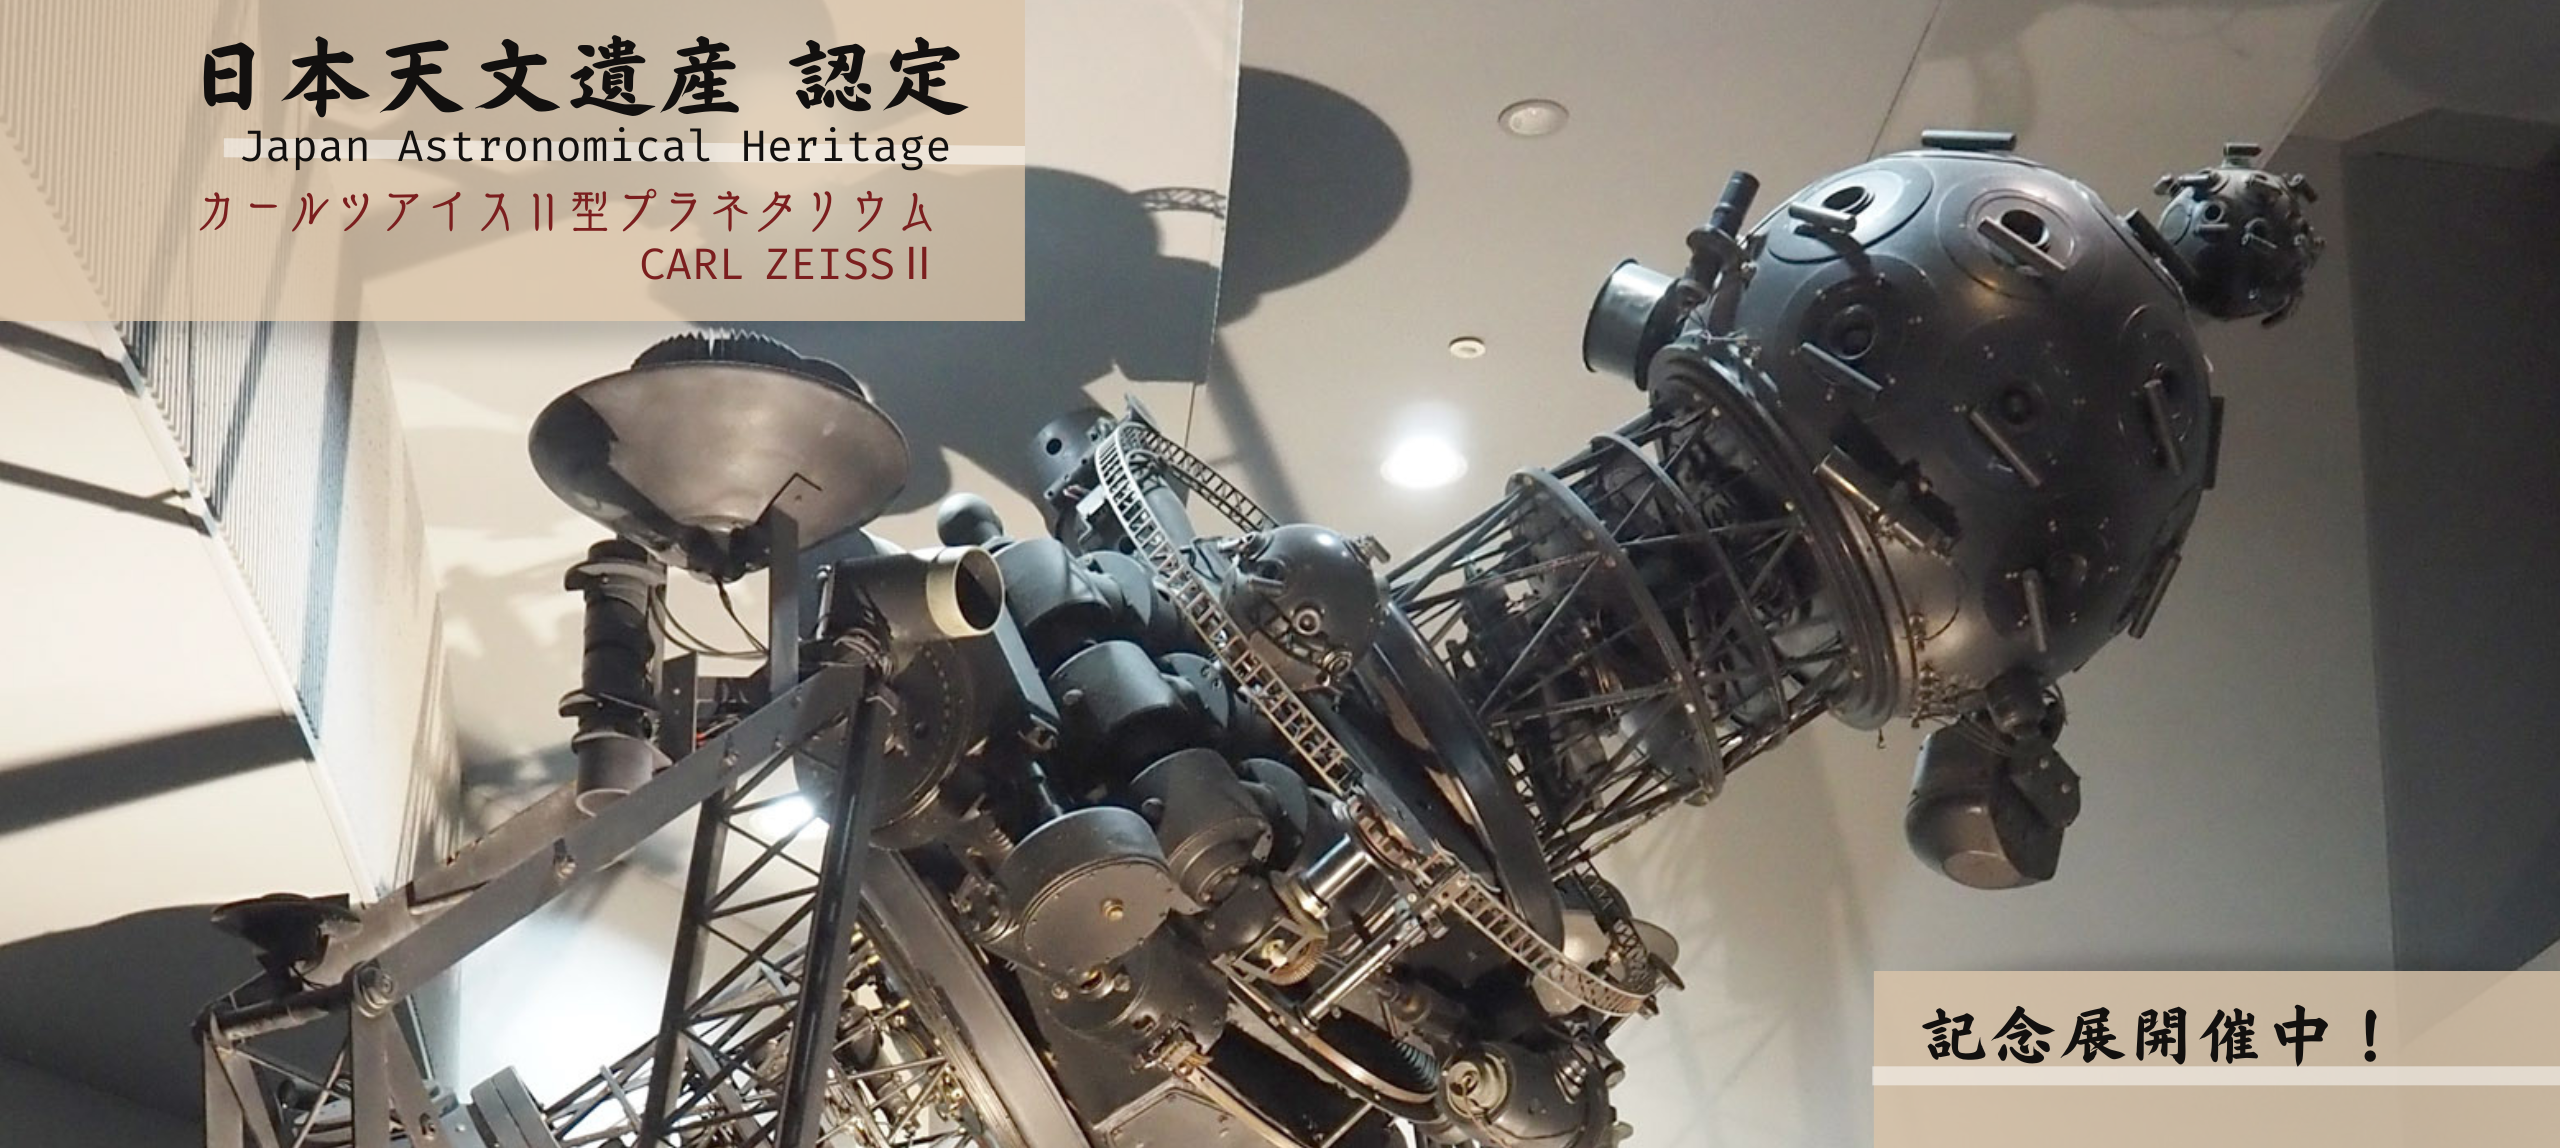 カールツアイスⅡ型プラネタリウム　日本天文遺産認定記念展